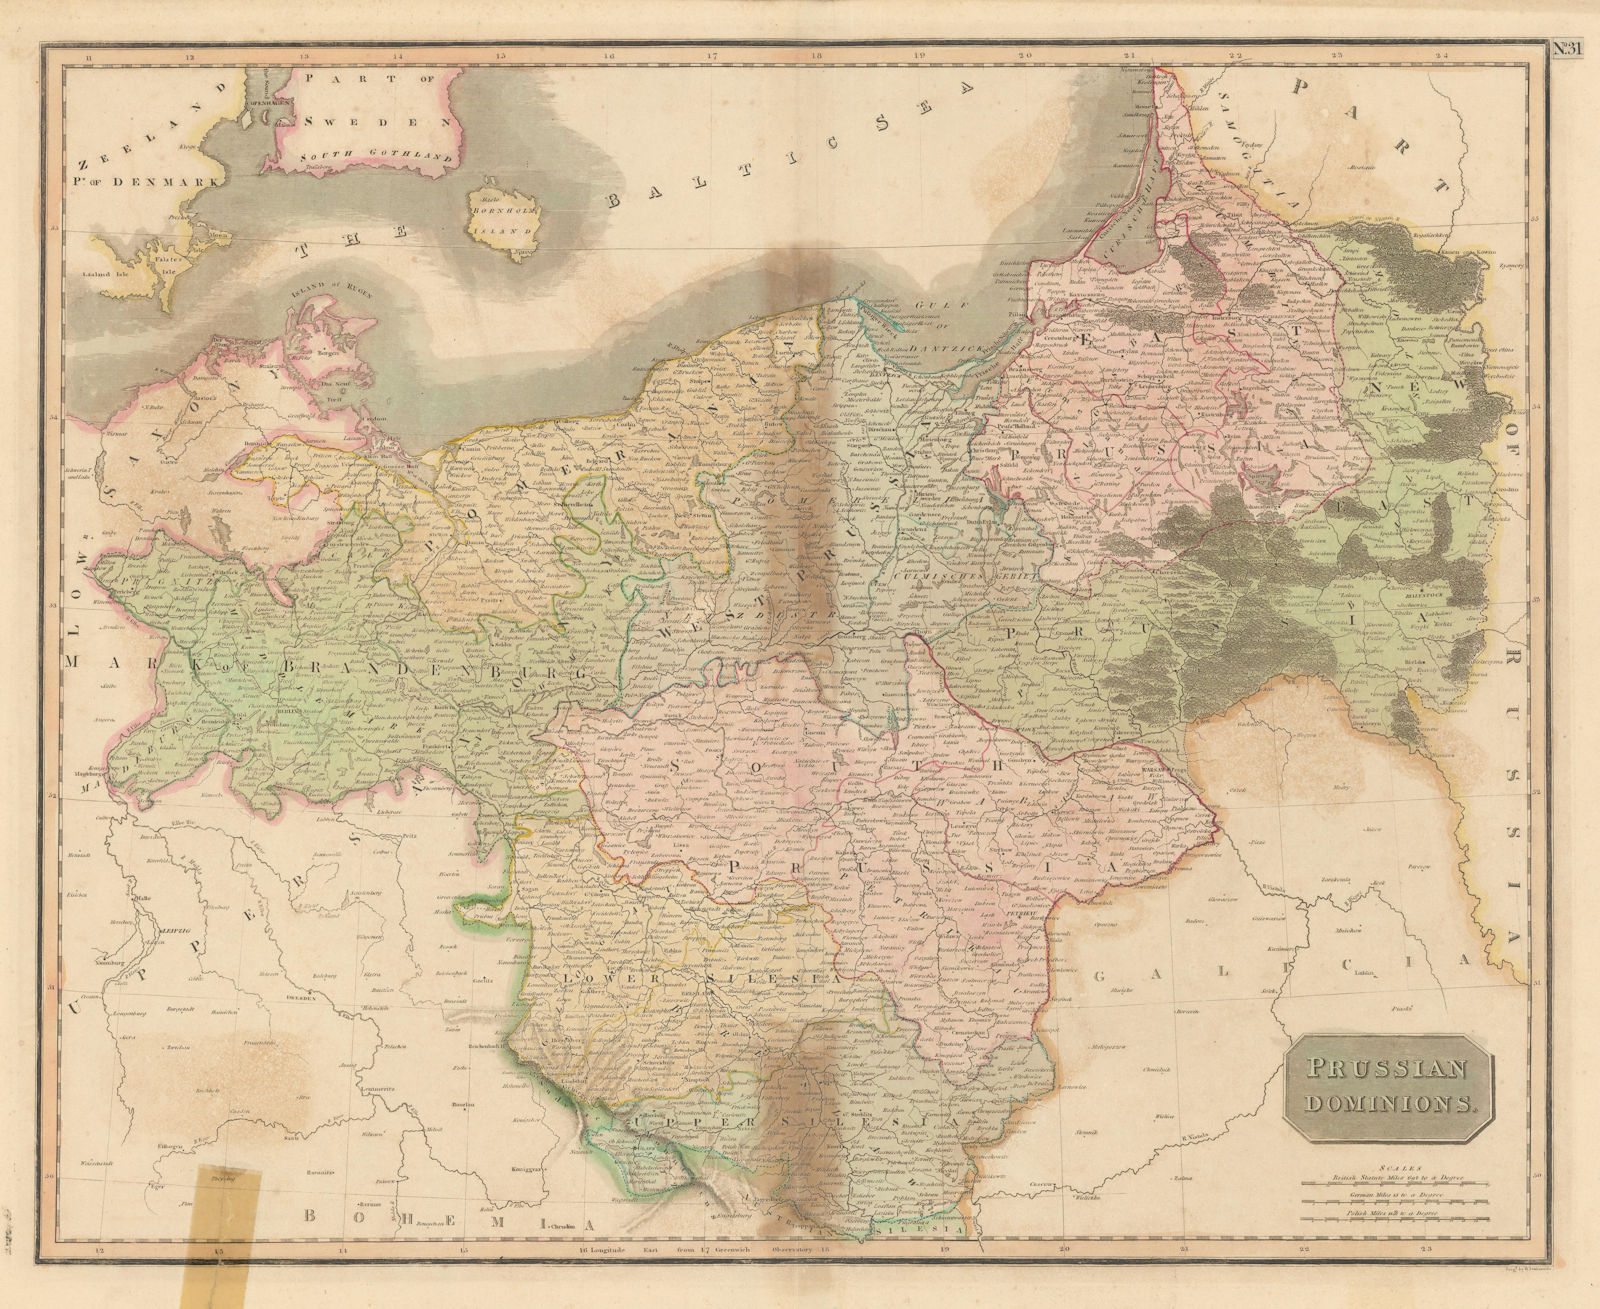 "Prussian dominions". Poland Brandenburg Silesia Pomerania. THOMSON 1817 map